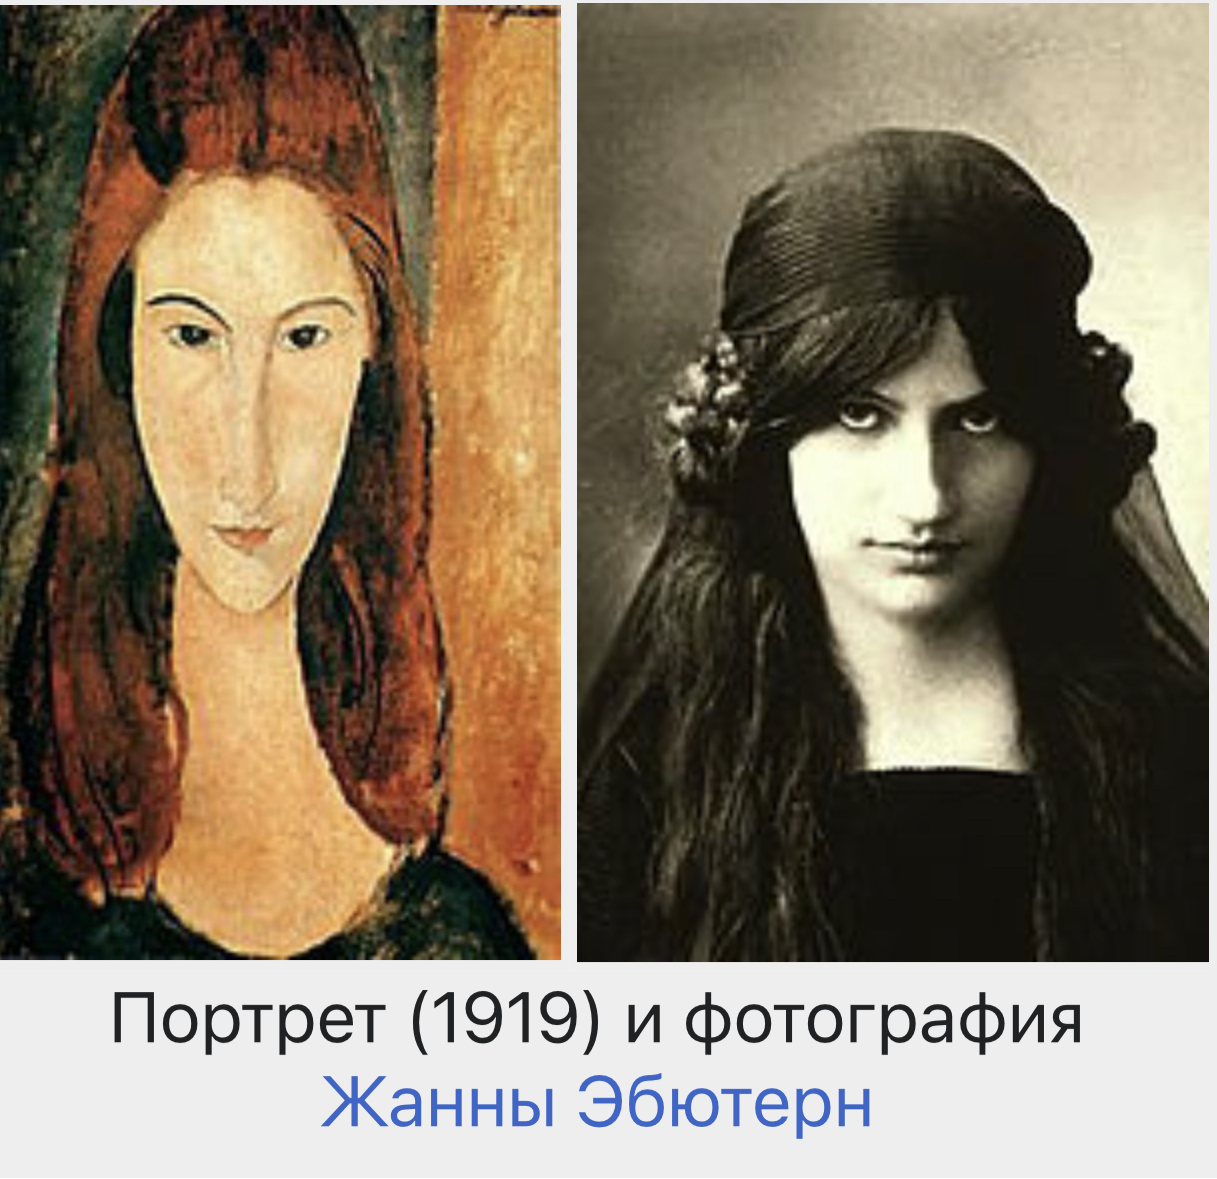 Сравнение портрета Модильяни и фотографии Жанны Эбютерн. Источник: Википедия.